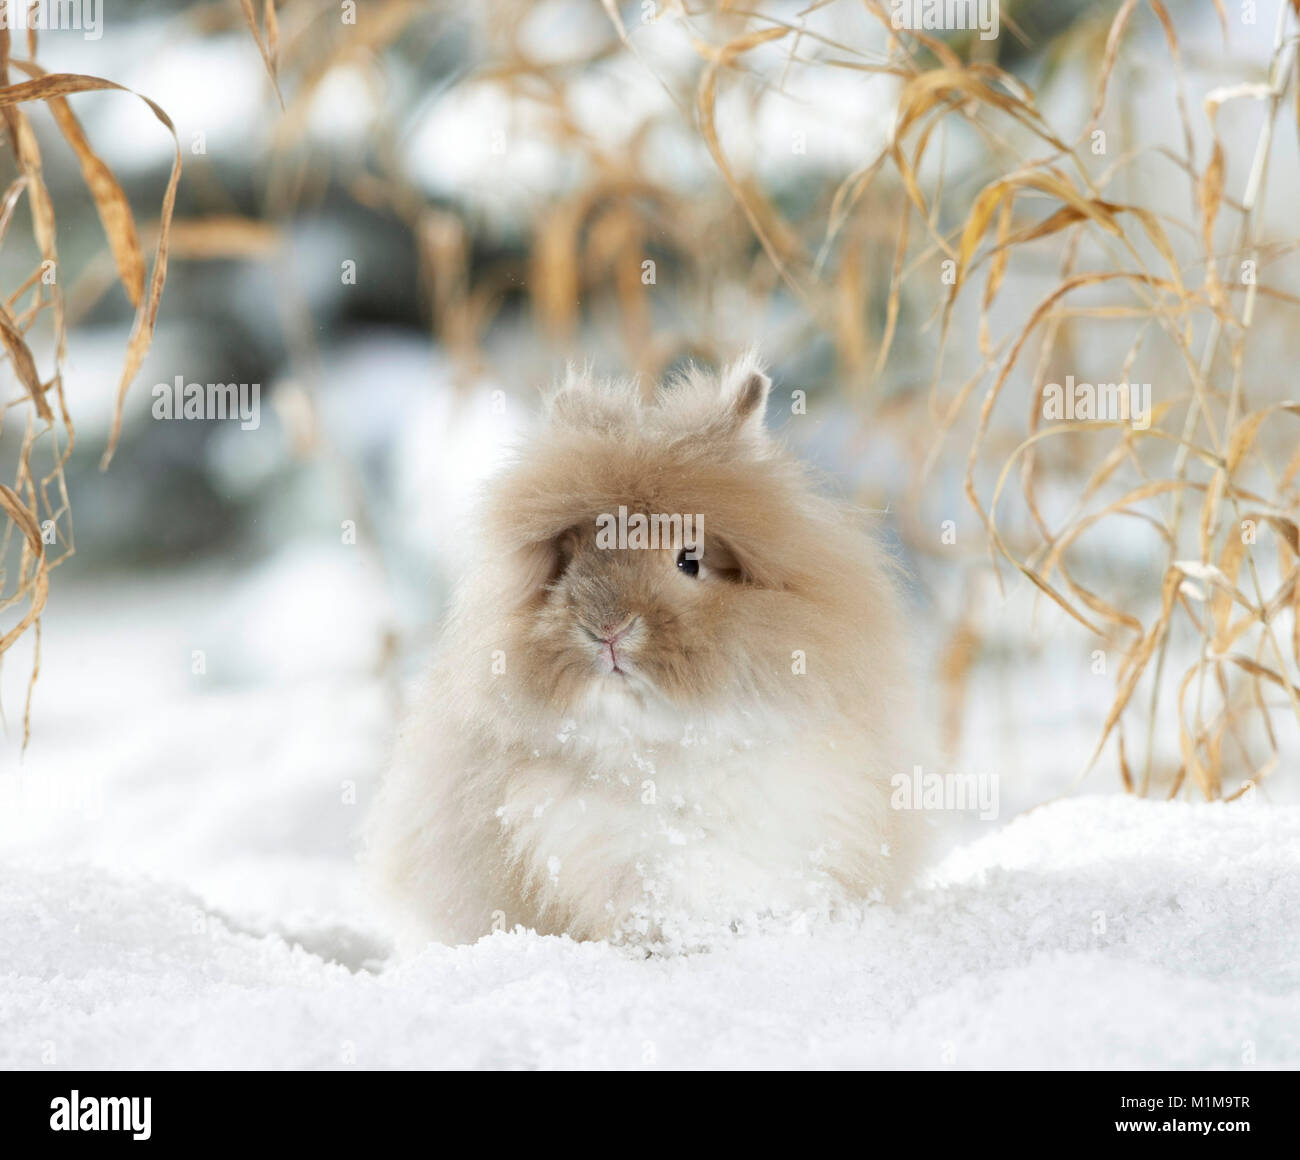 Dwarf Angora Rabbit in snow. Germany Stock Photo